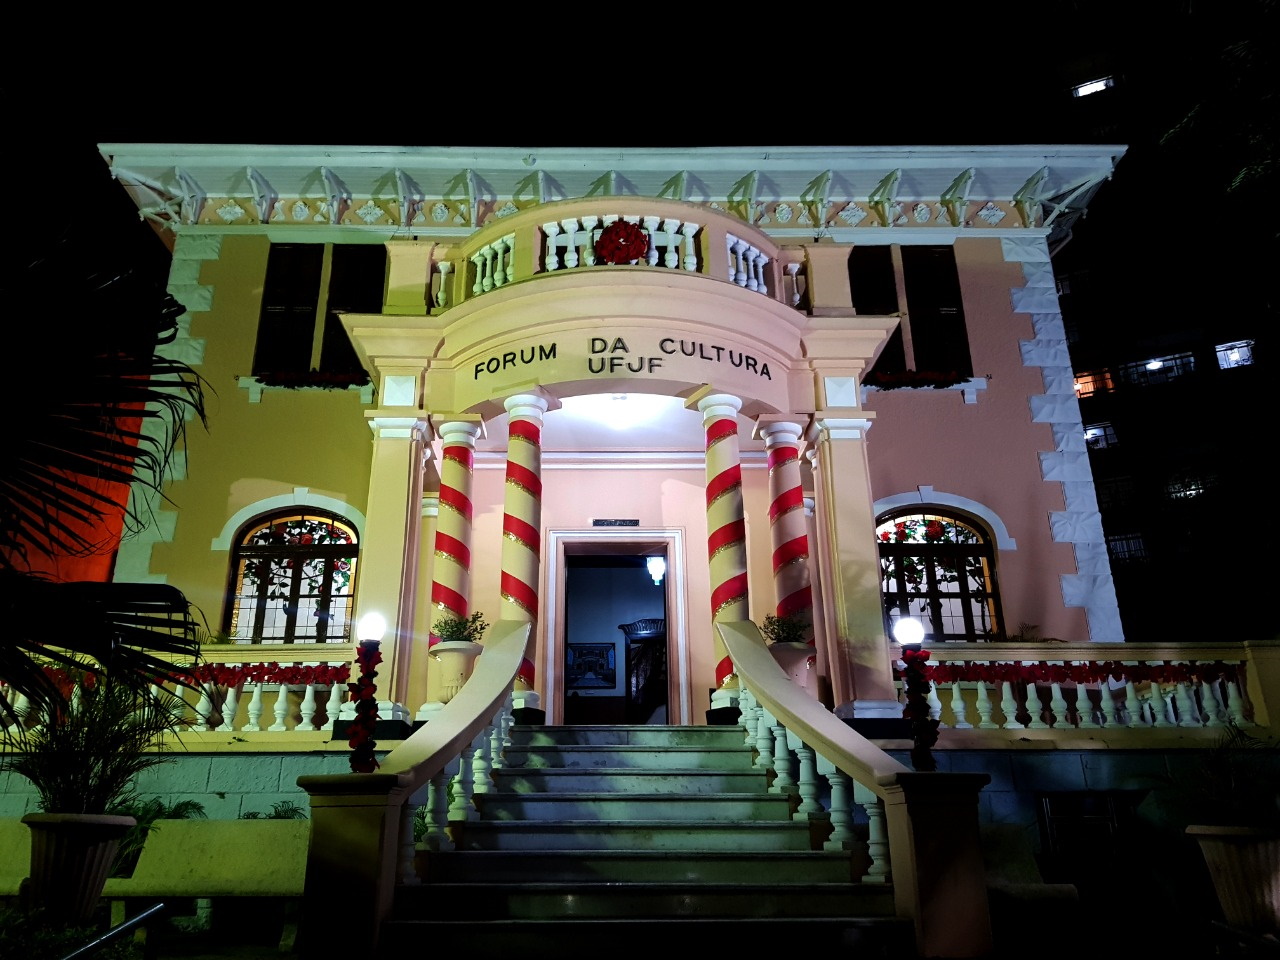 Decoração natalina da fachada do casarão do Forum da Cultura. Foto noturna. 